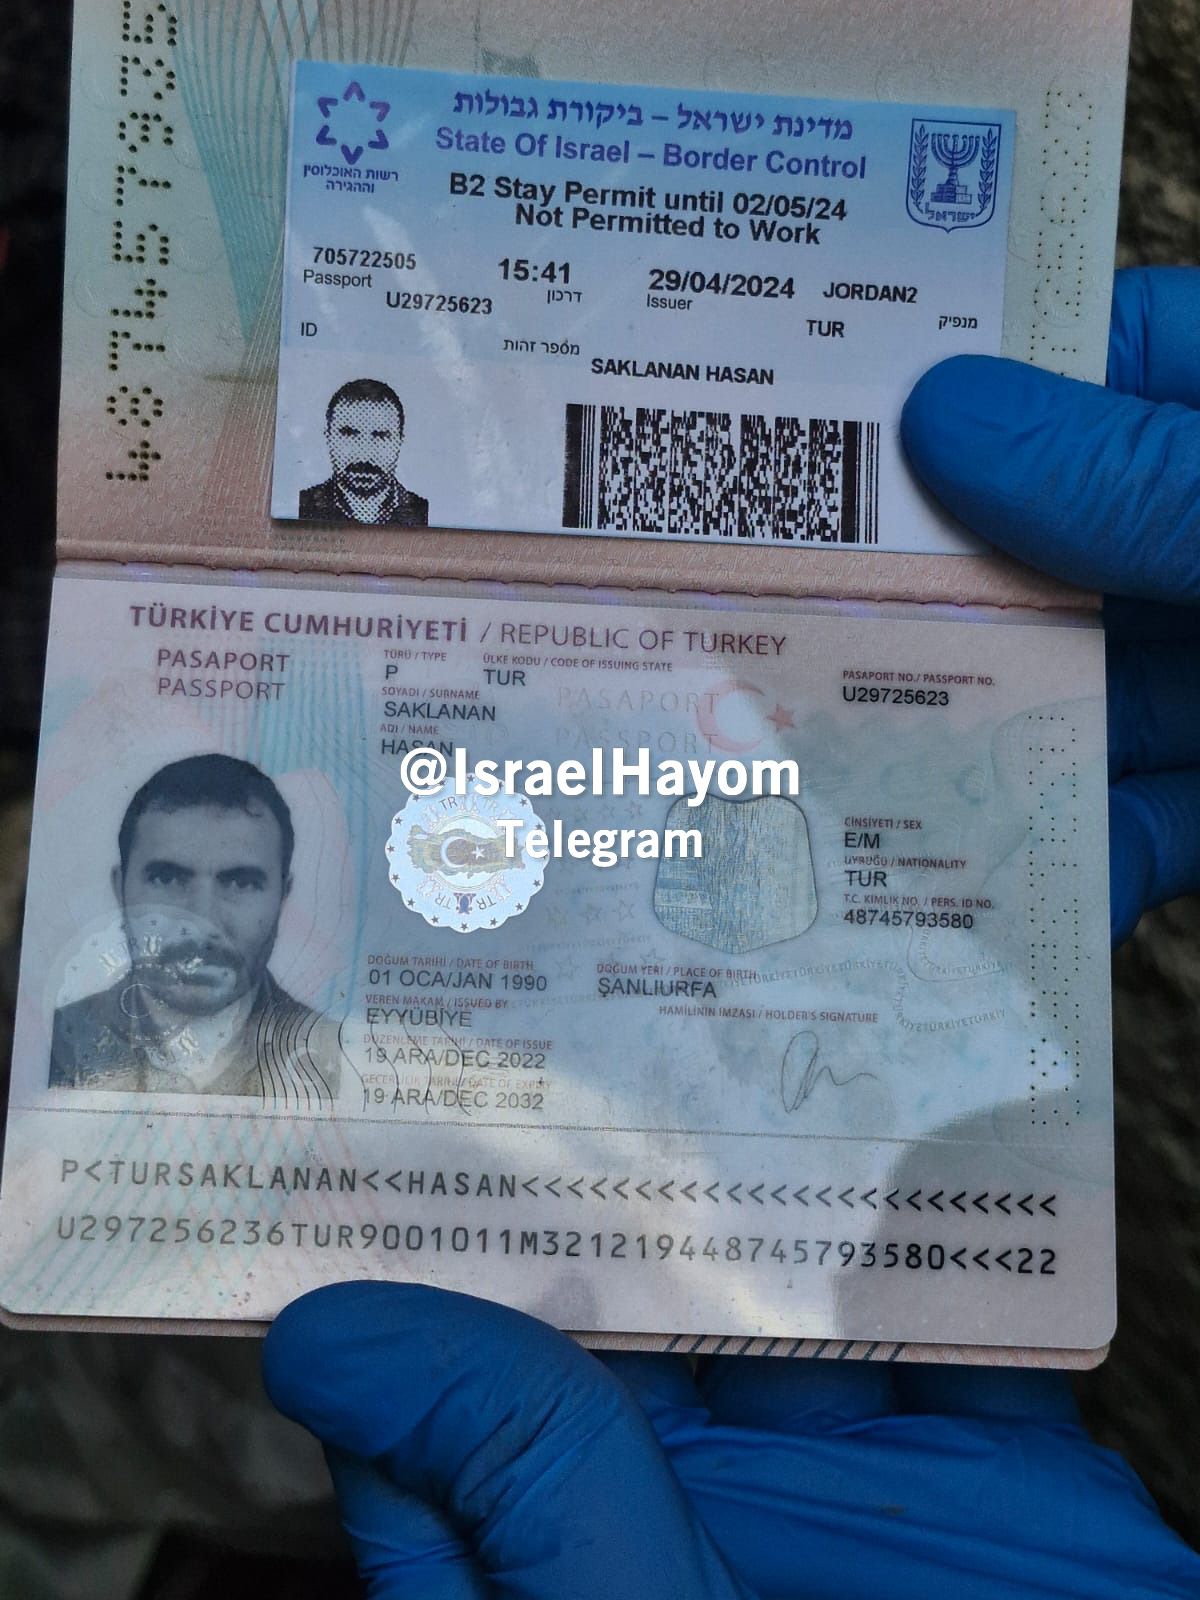 جواز سفر المنفذ كما نشره الإعلام العبري